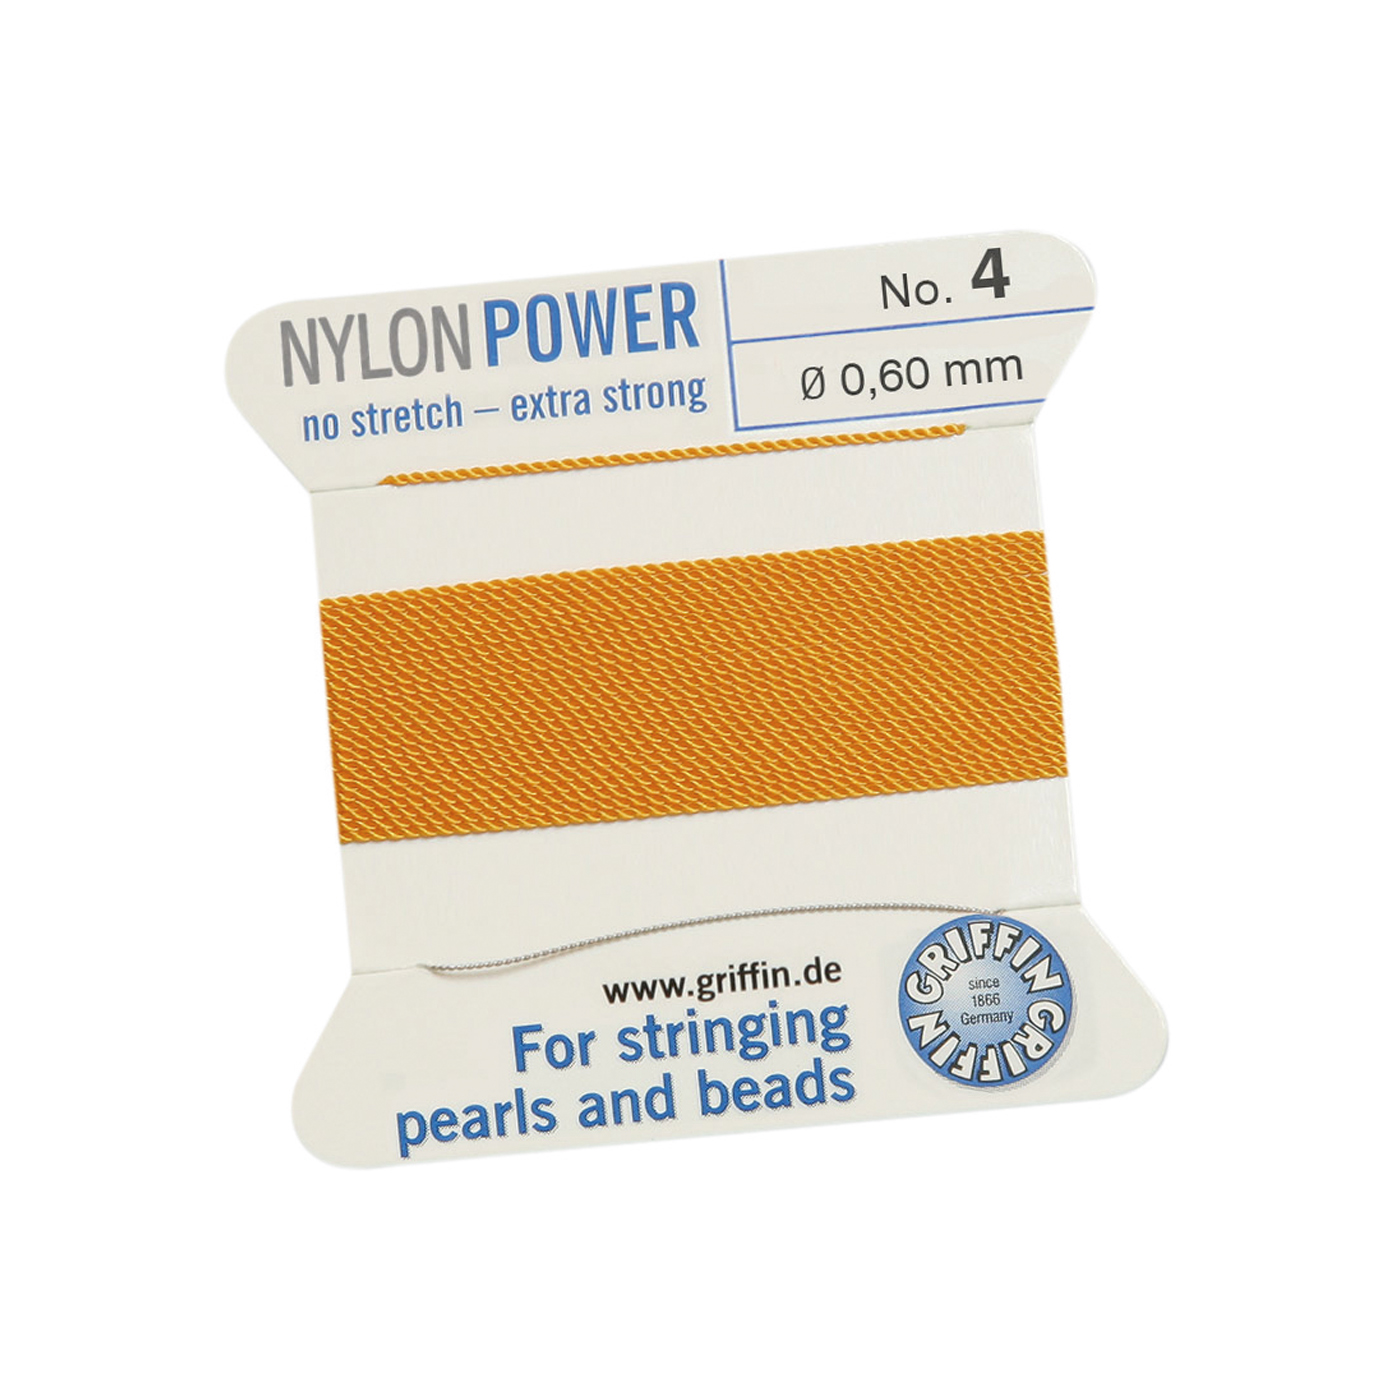 Bead Cord NylonPower, Dark Yellow, No. 4 - 2 m